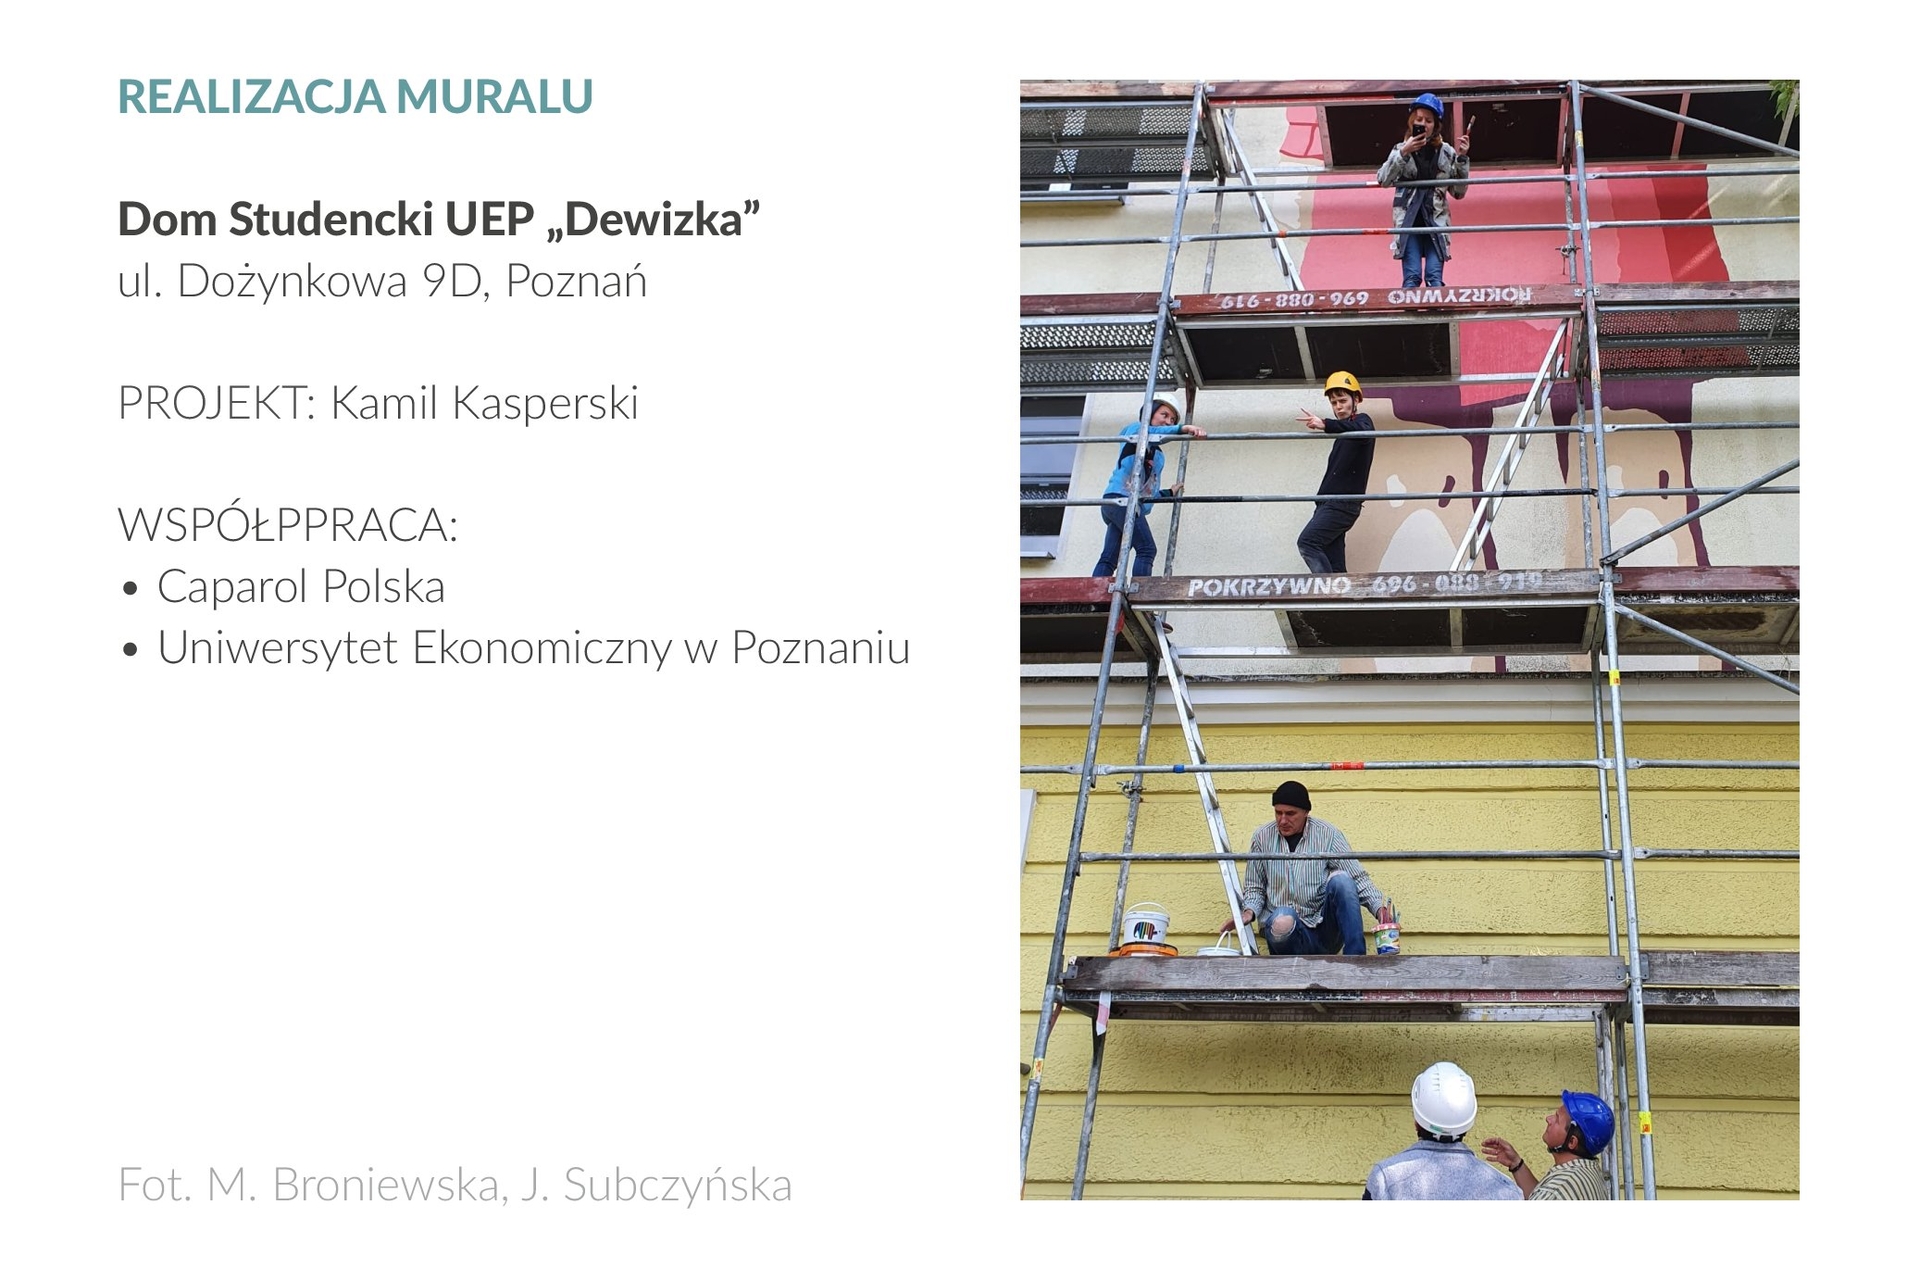 Zdjęcie przedstawia 6 osób na wielopiętrowym rusztowaniu stojącym na tle elewacji bocznej Domu Studenckiego UEP „Dewizka” przy ul. Dożynkowej 9D w Poznaniu. Na ścianie widać widać fragment muralu, malowanego według projektu Kamila Kasperskiego.